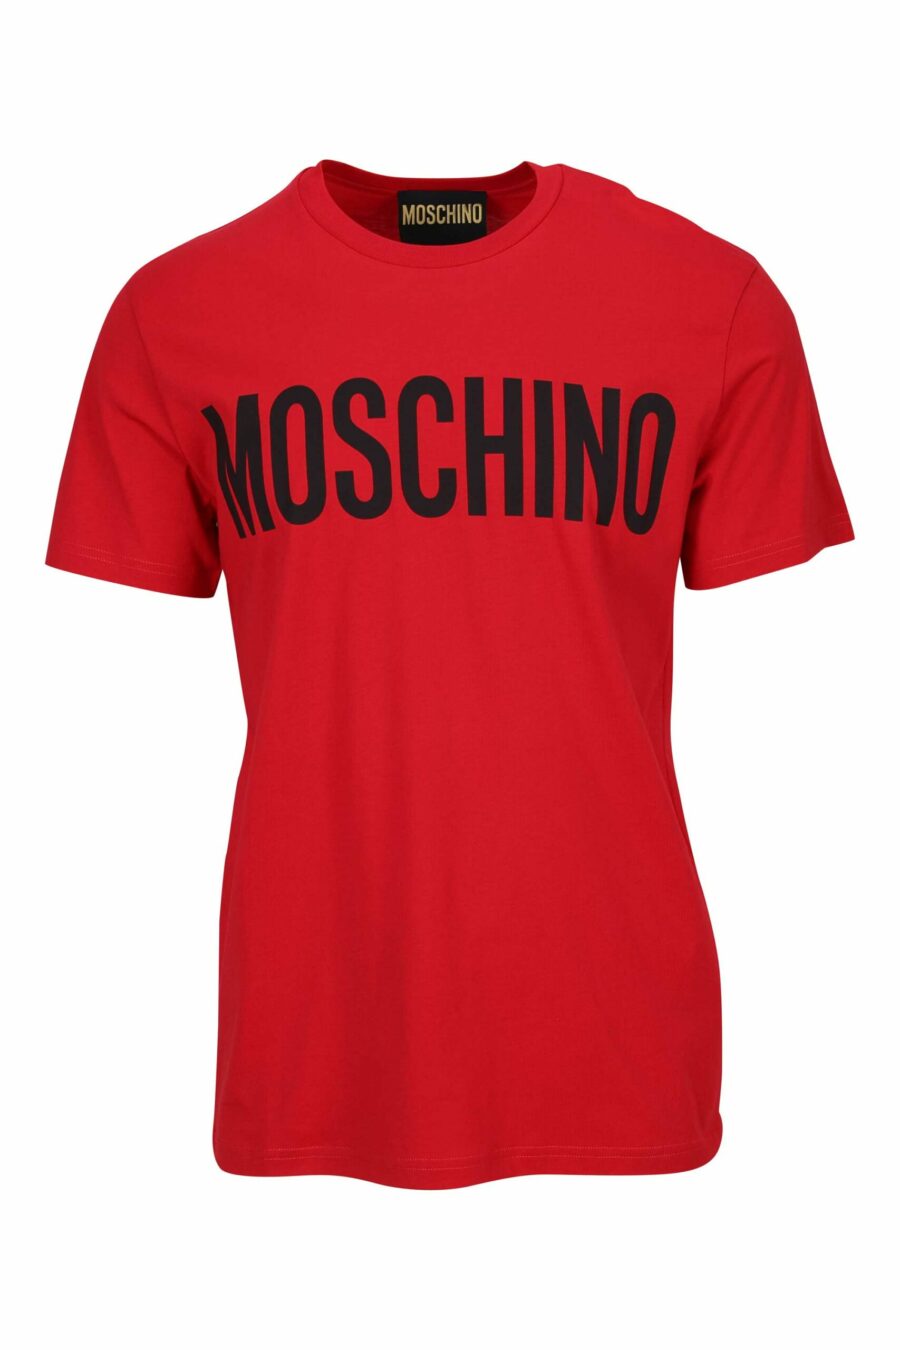 T-shirt oversize en coton bio rouge avec maxilogue noir classique - 667113751856 scaled